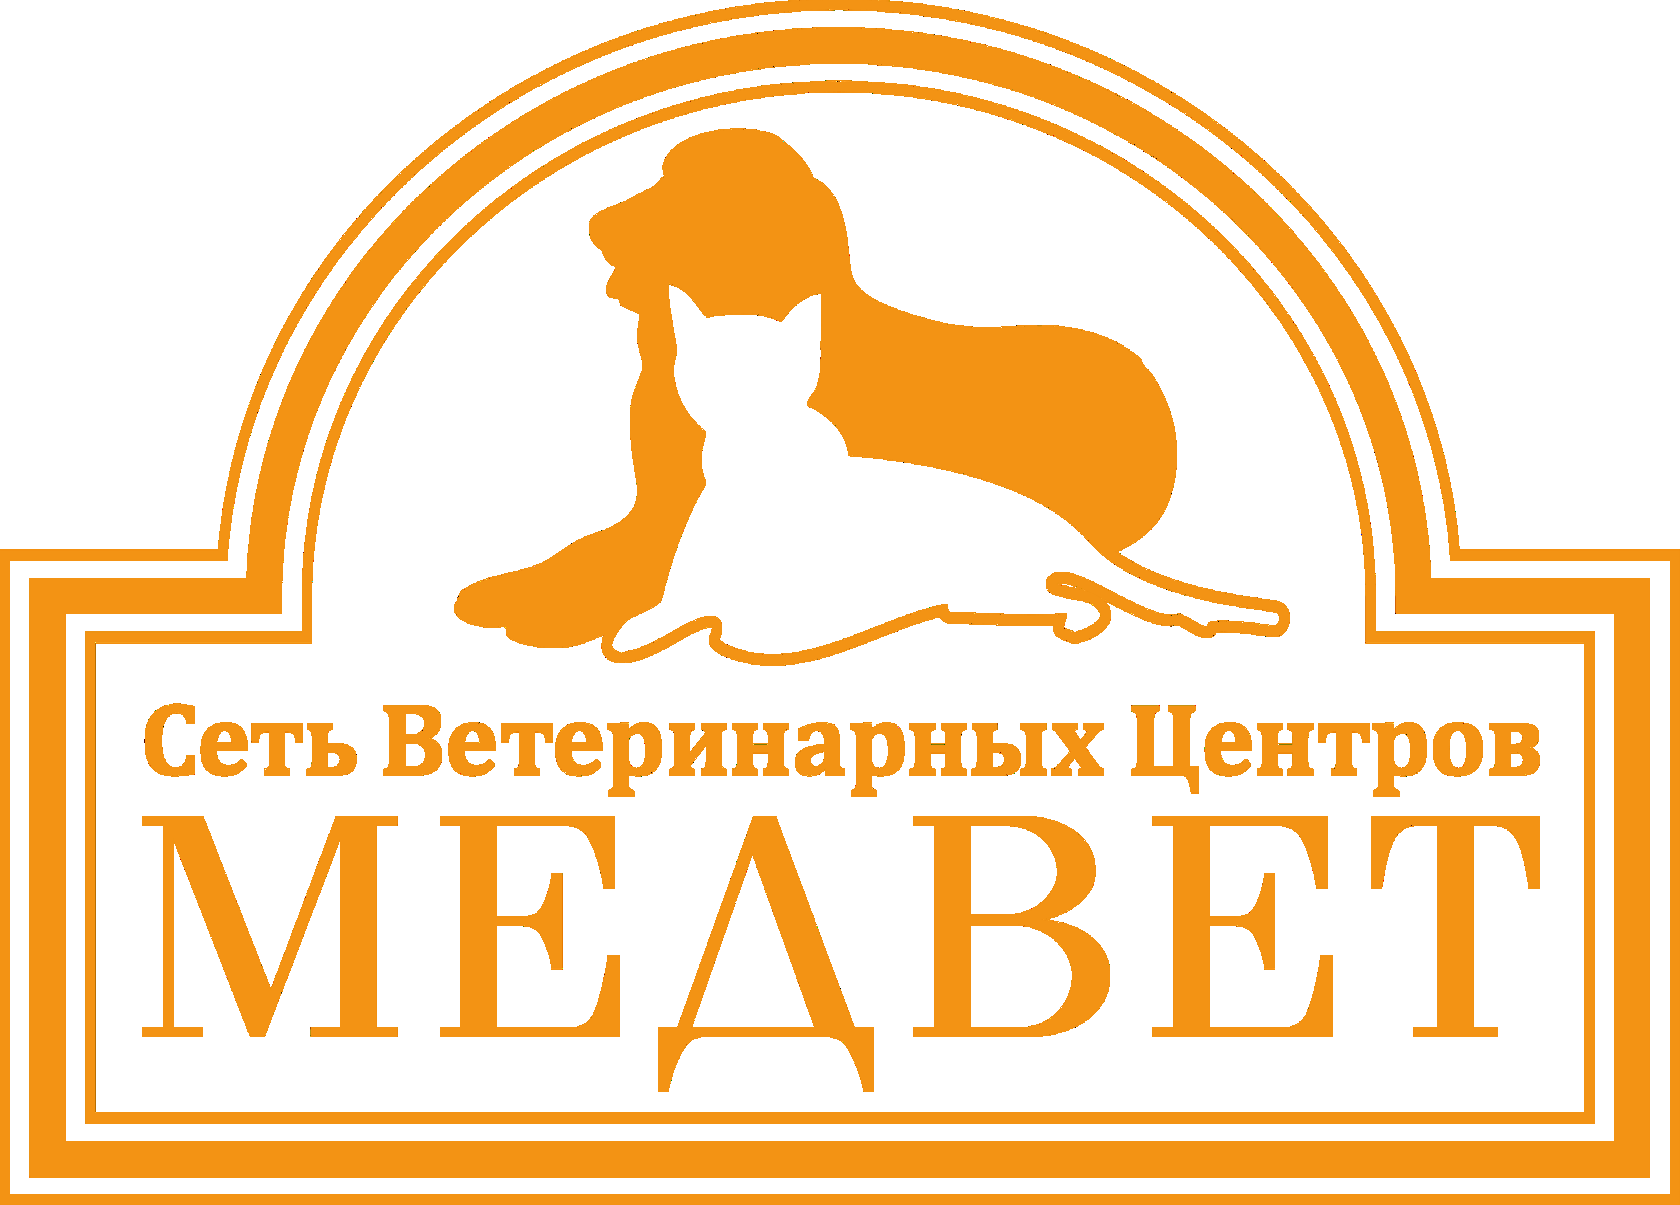 Клиника медвед. Медведь клиника ветеринарная Москва. МЕДВЕТ ветеринарная клиника Домодедово. Медвед Домодедово ветклиника. Логотип ветеринарной клиники.